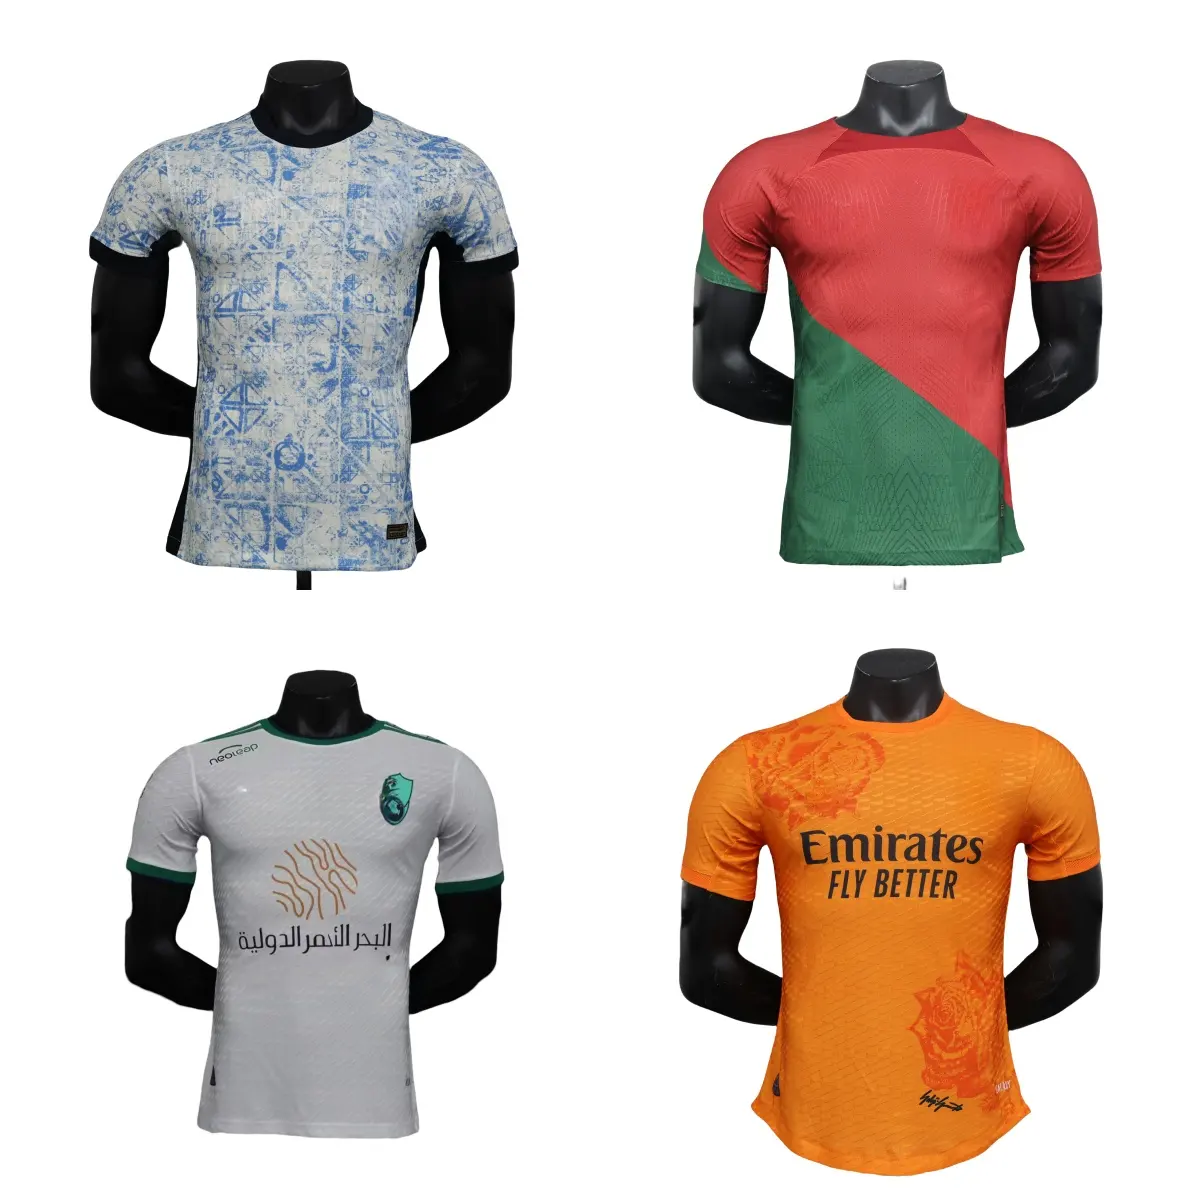 2023 nuevo diseño Ignis superventas uniformes de fútbol camisetas de fútbol personalizado fútbol Jersey desgaste 100% tela de calidad pura